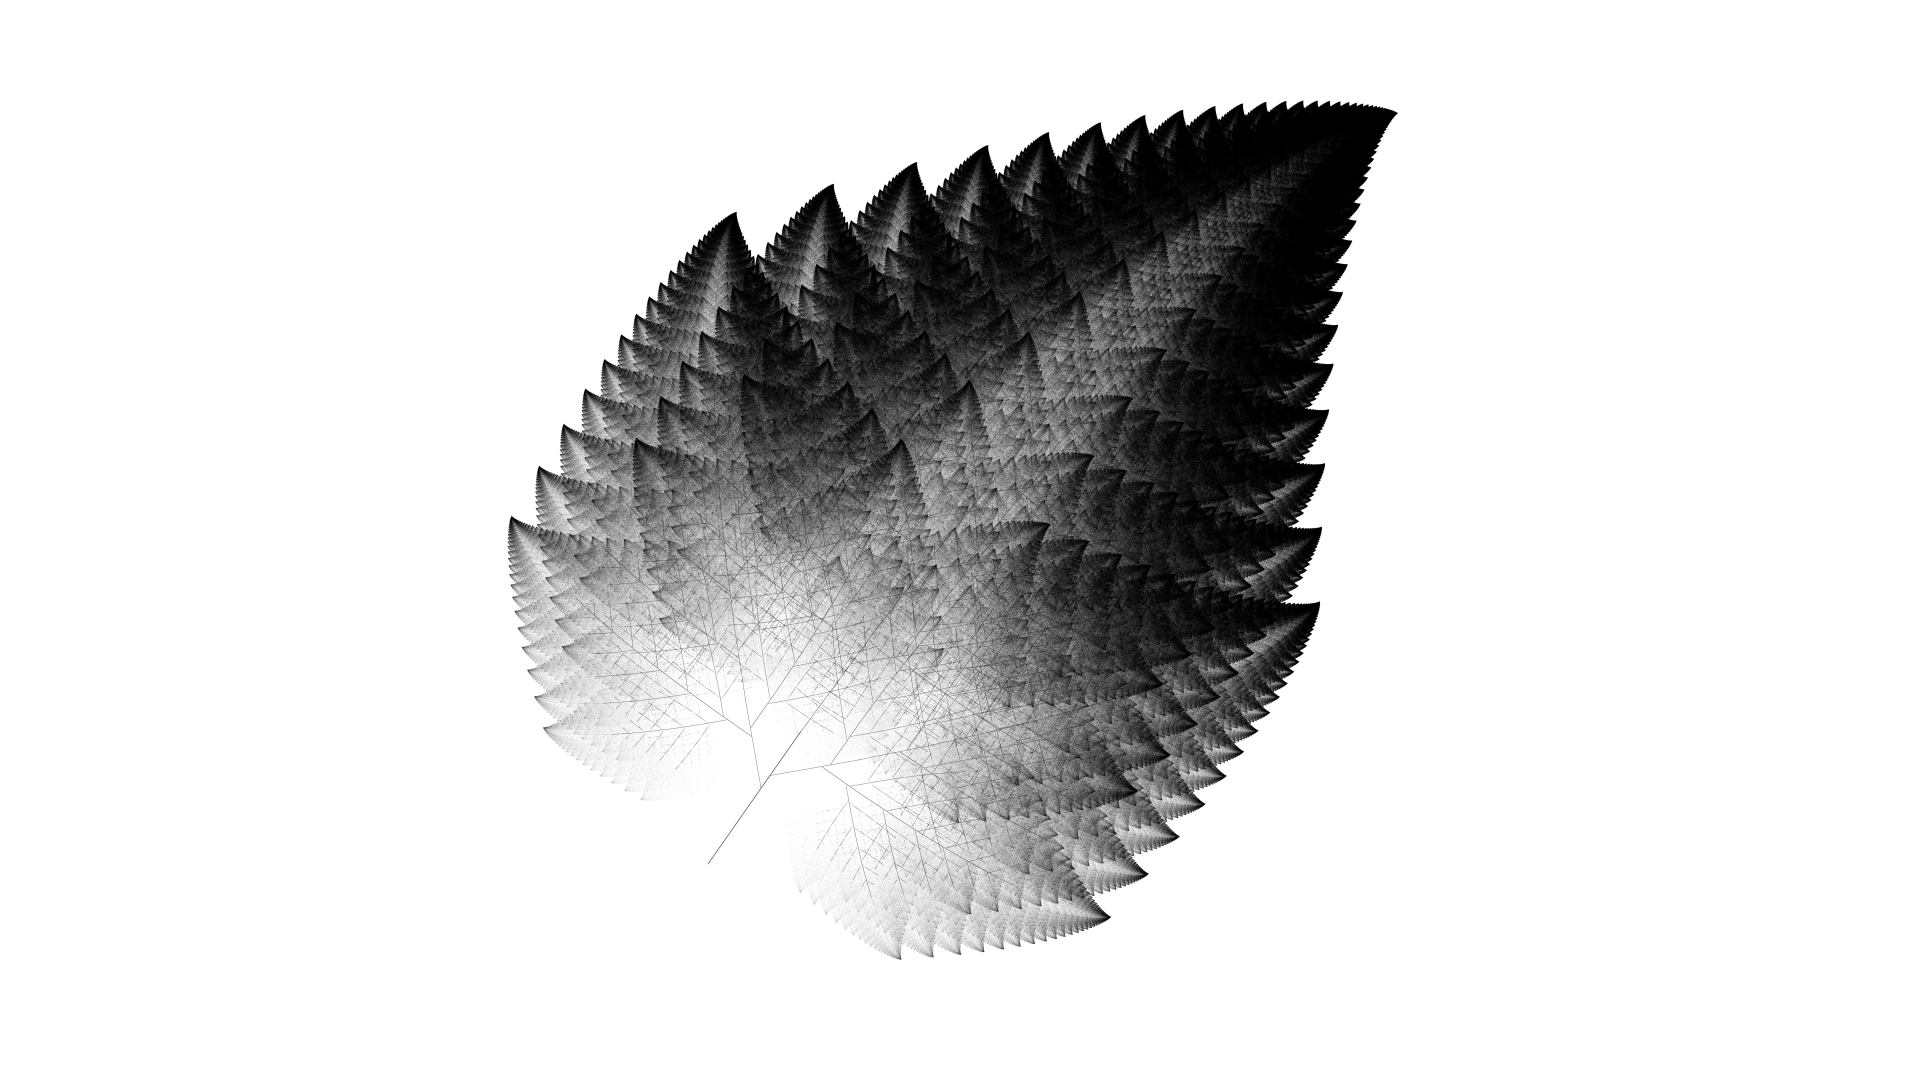 Leaf fractal based on Barnsley Fern